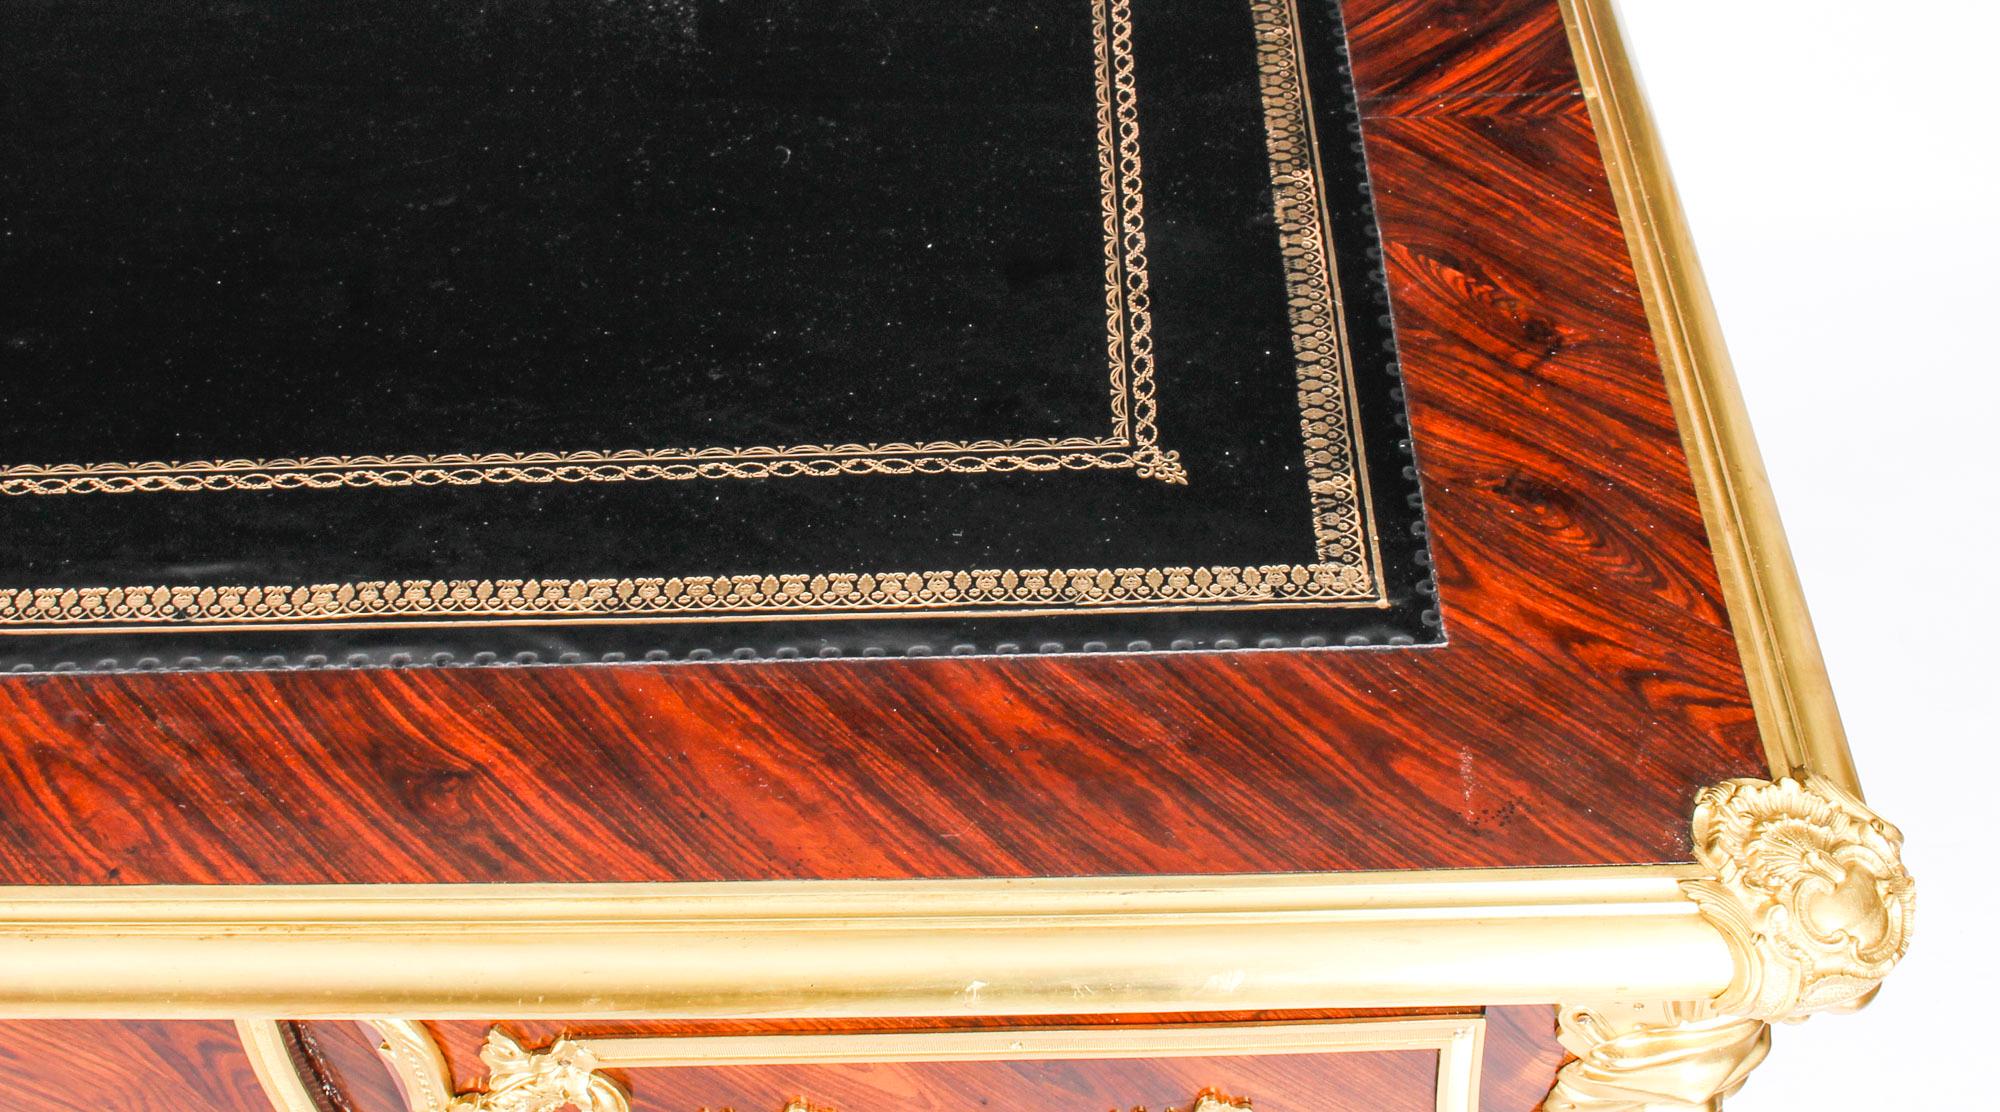 Leather Antique French Louis Revival Kingwood & Ormolu Bureau Plat Desk, 19th Century